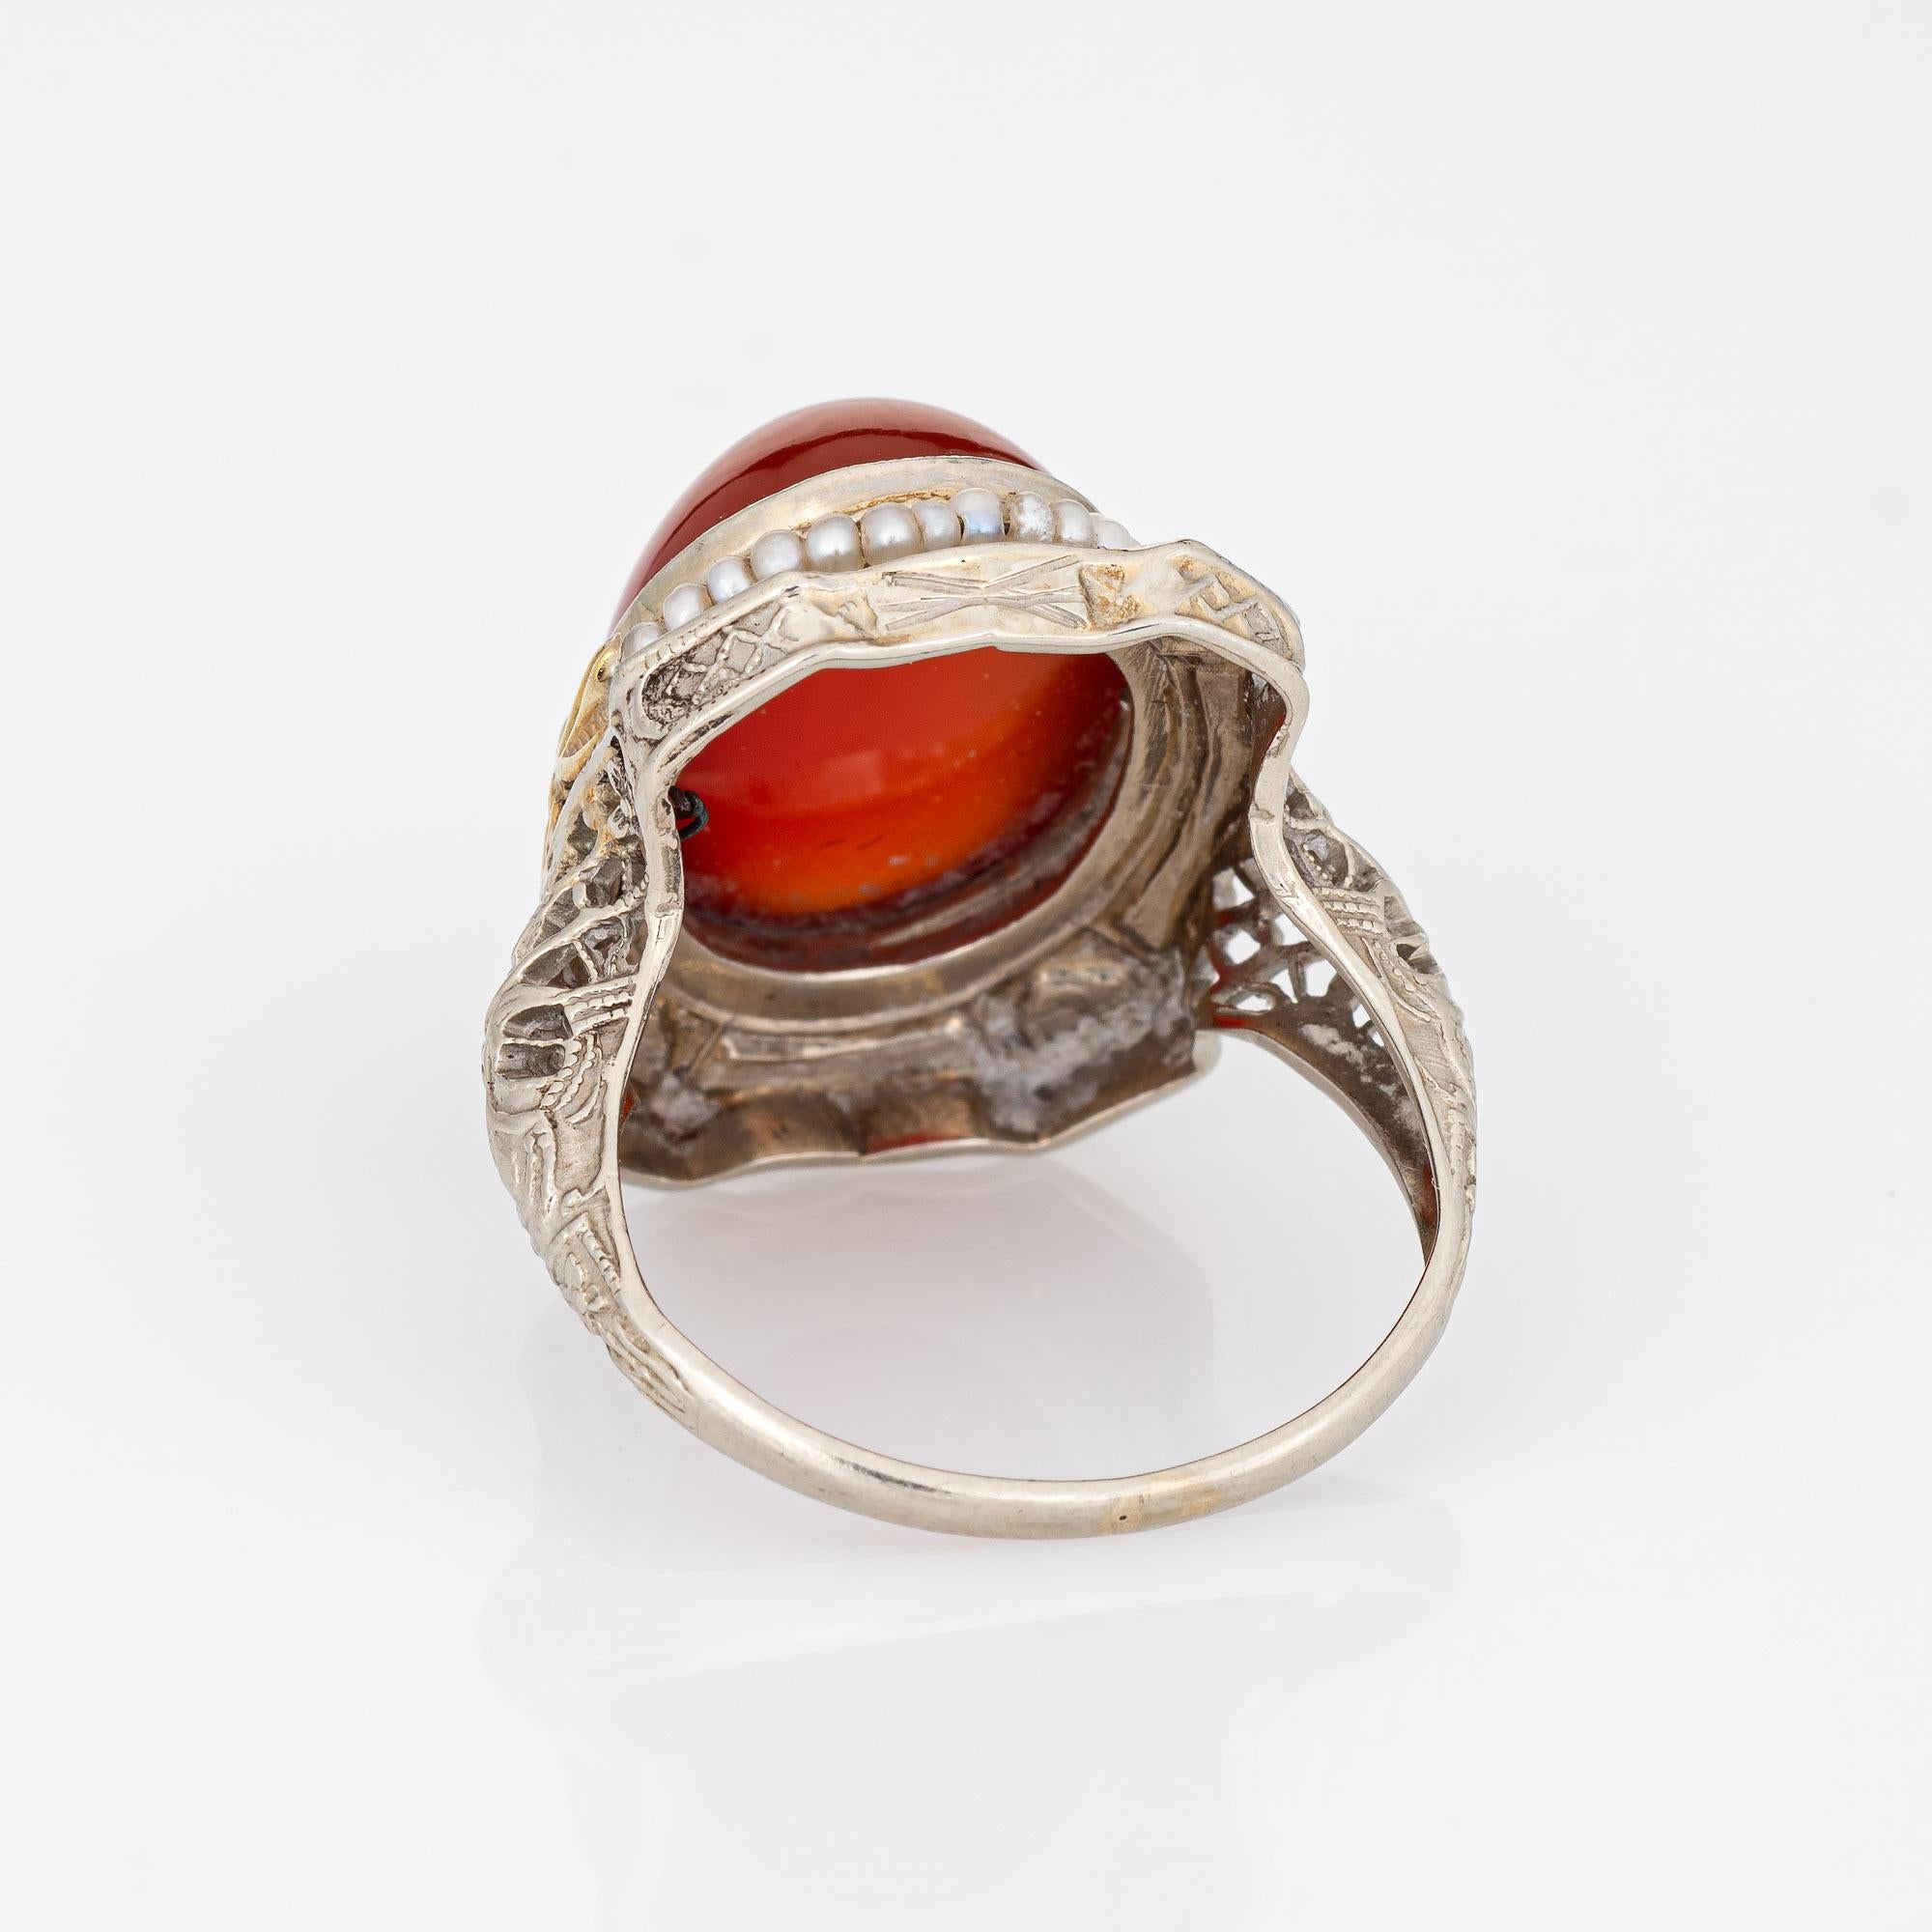 Women's Vintage Art Deco Carnelian Ring 14k White Gold Filigree Heart Enamel Seed Pearl